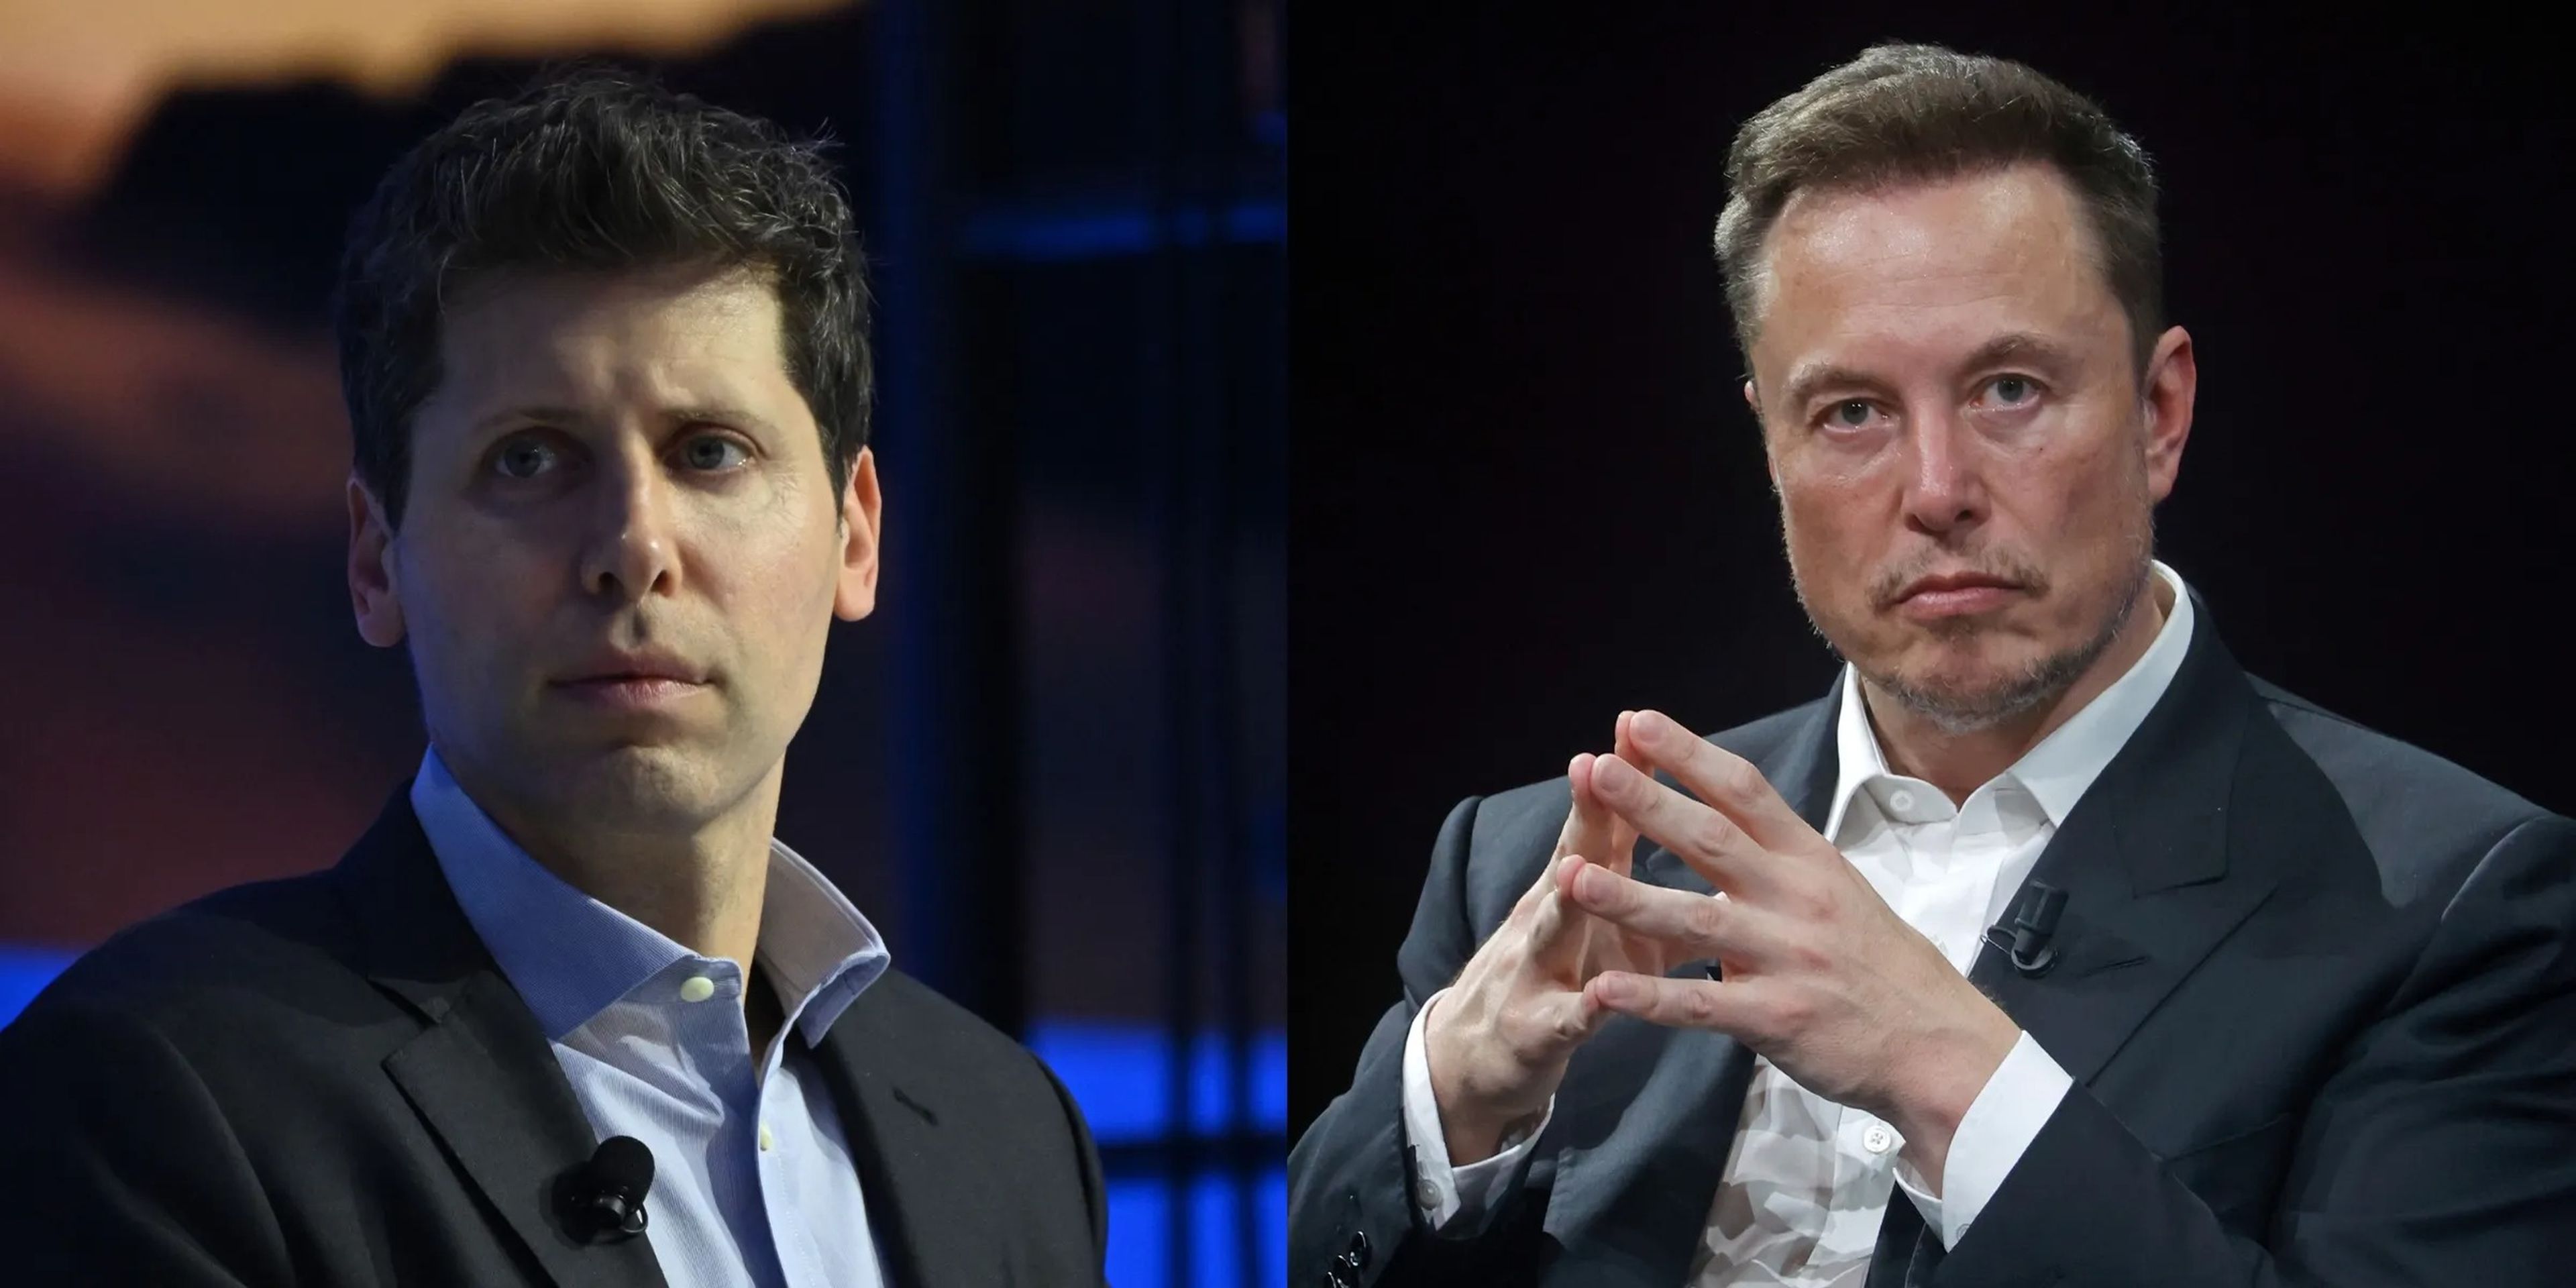 Los ejecutivos de OpenAI, incluido su consejero delegado, Sam Altman, han publicado correos electrónicos que sugieren que Elon Musk creía que la empresa de IA debería haberse unido a Tesla para obtener financiación.